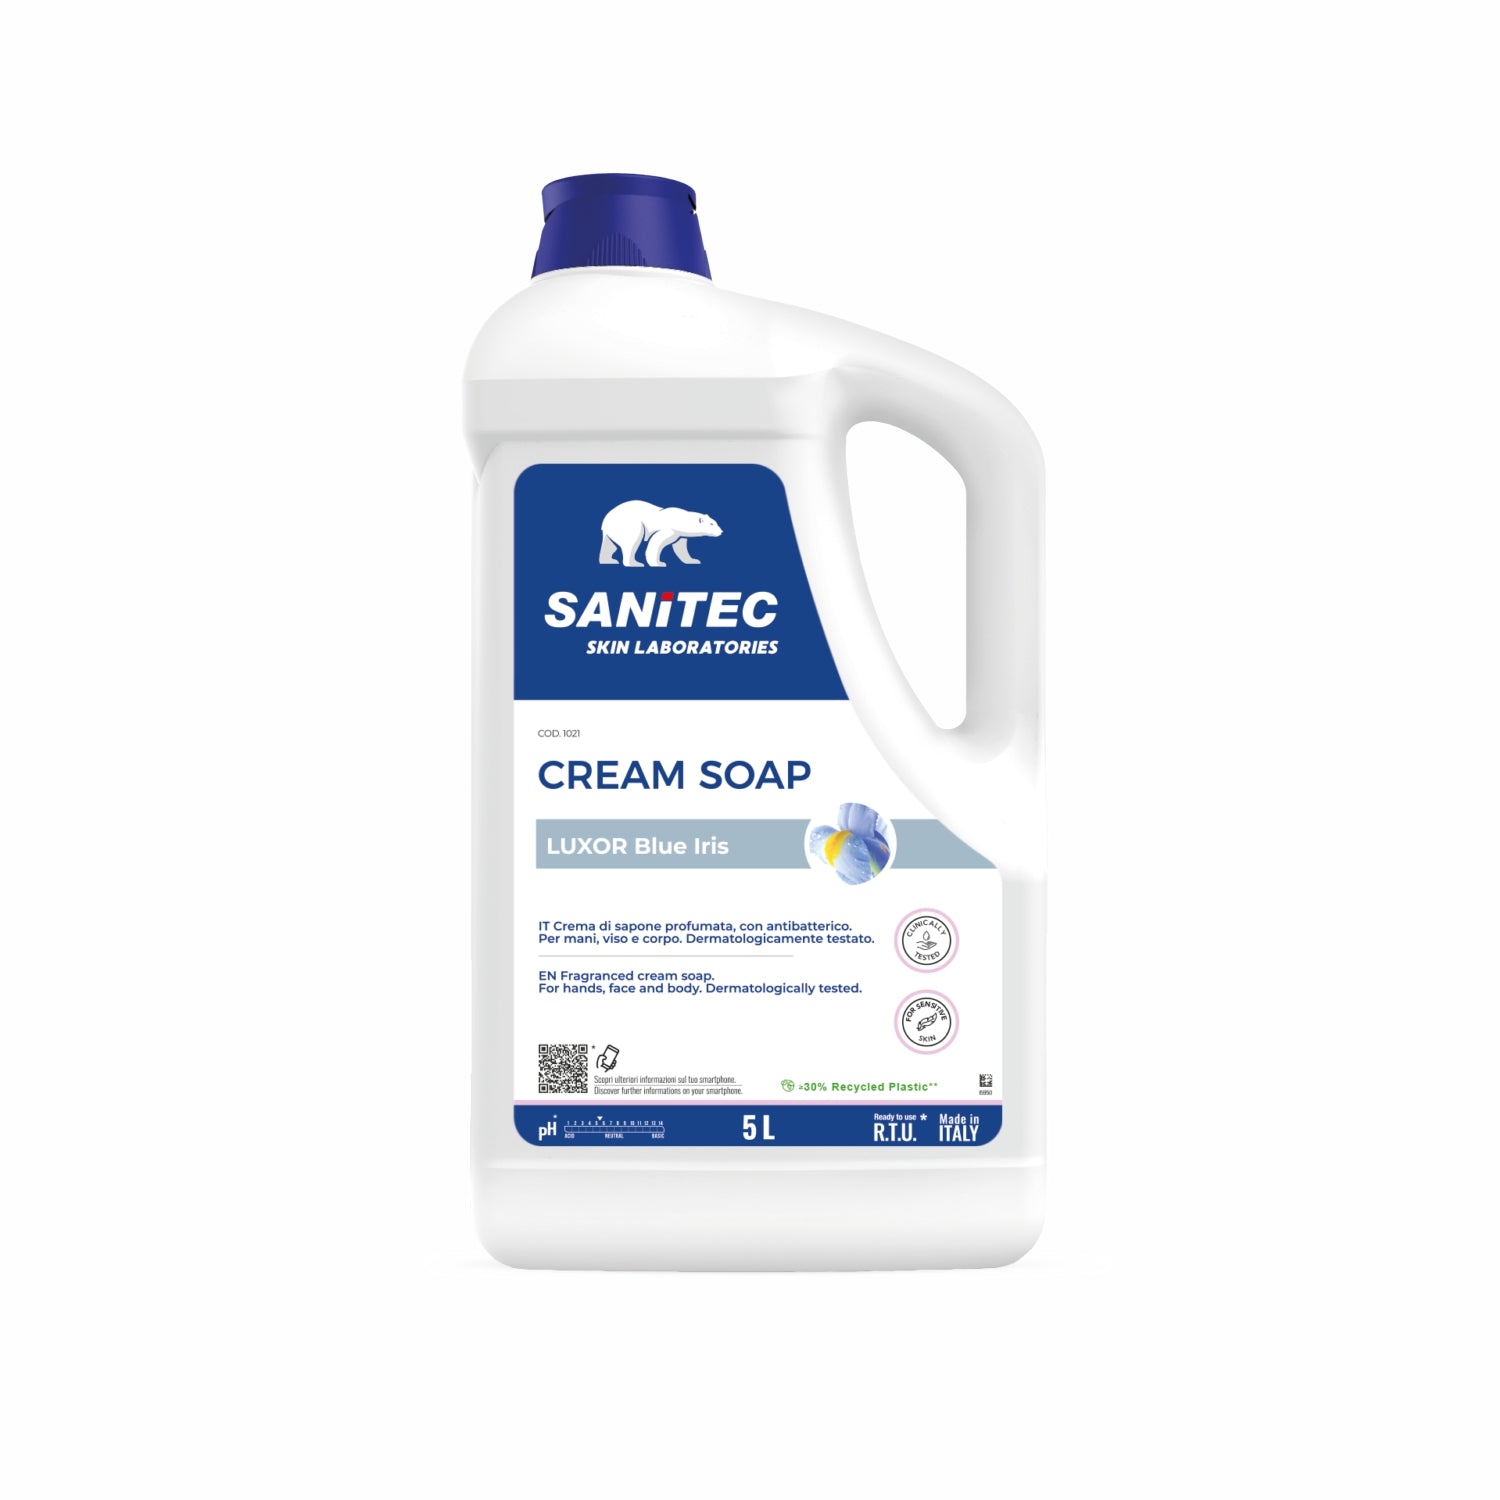 Sapone Cream Soap crema profumato idratante  5 litri sanitec 1021